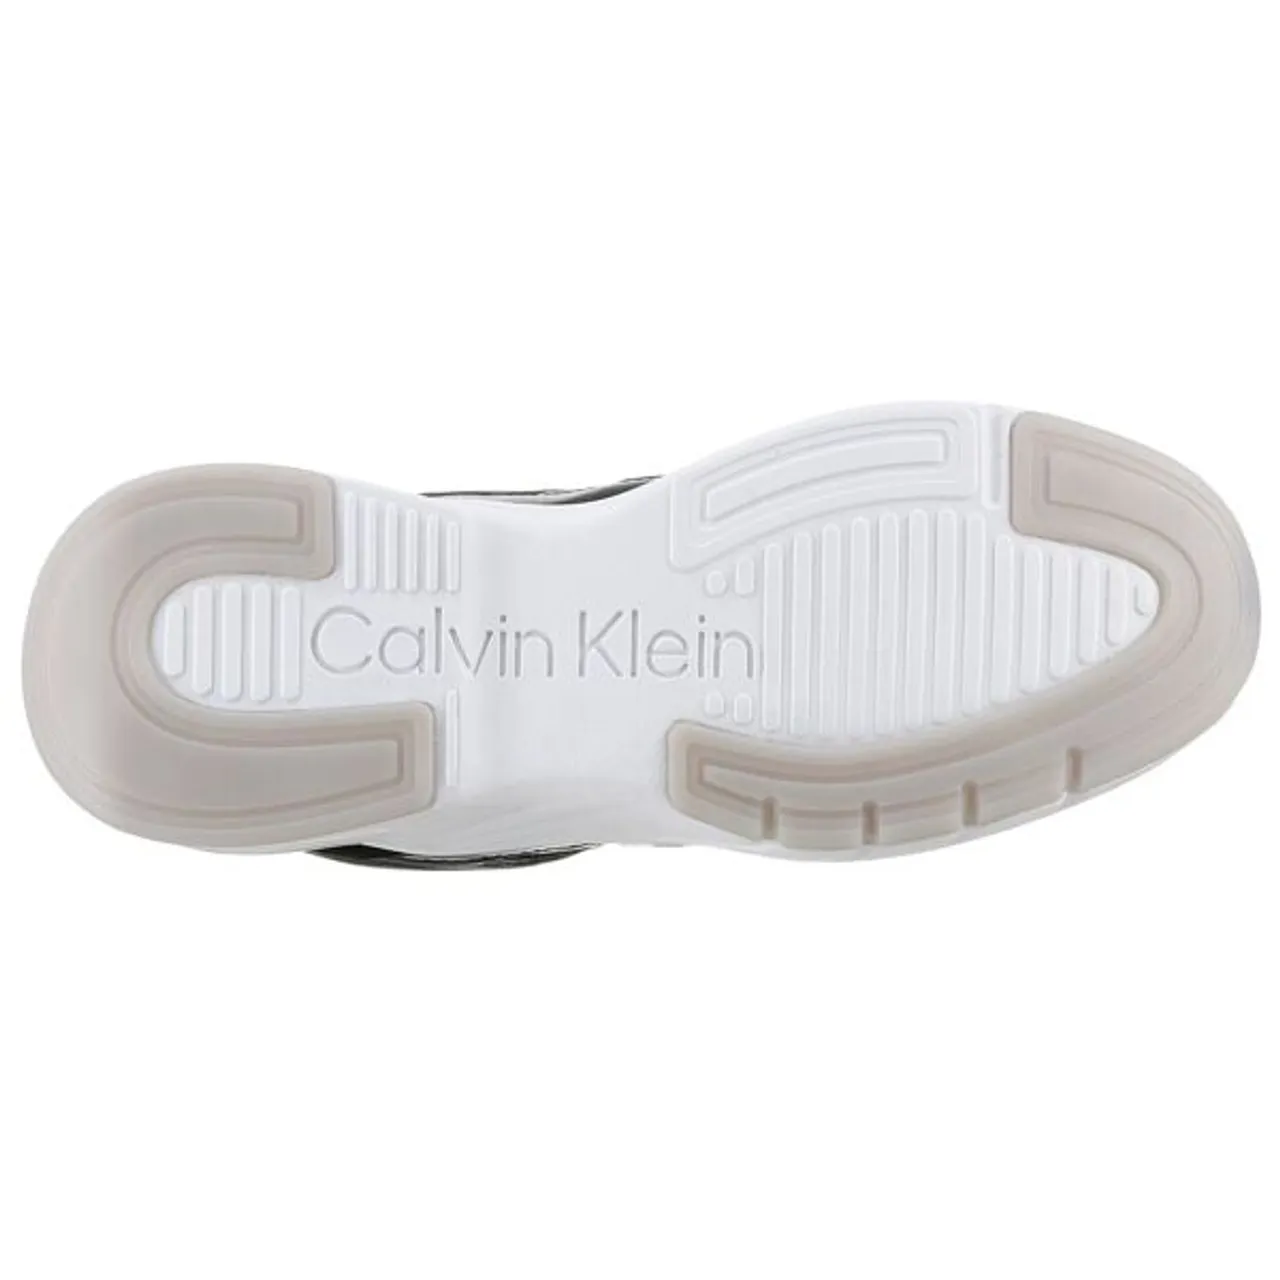 Wedgesneaker CALVIN KLEIN "ELEVATED RUNNER - MONO MIX" Gr. 38, schwarz-weiß (schwarz, weiß) Damen Schuhe Sneaker